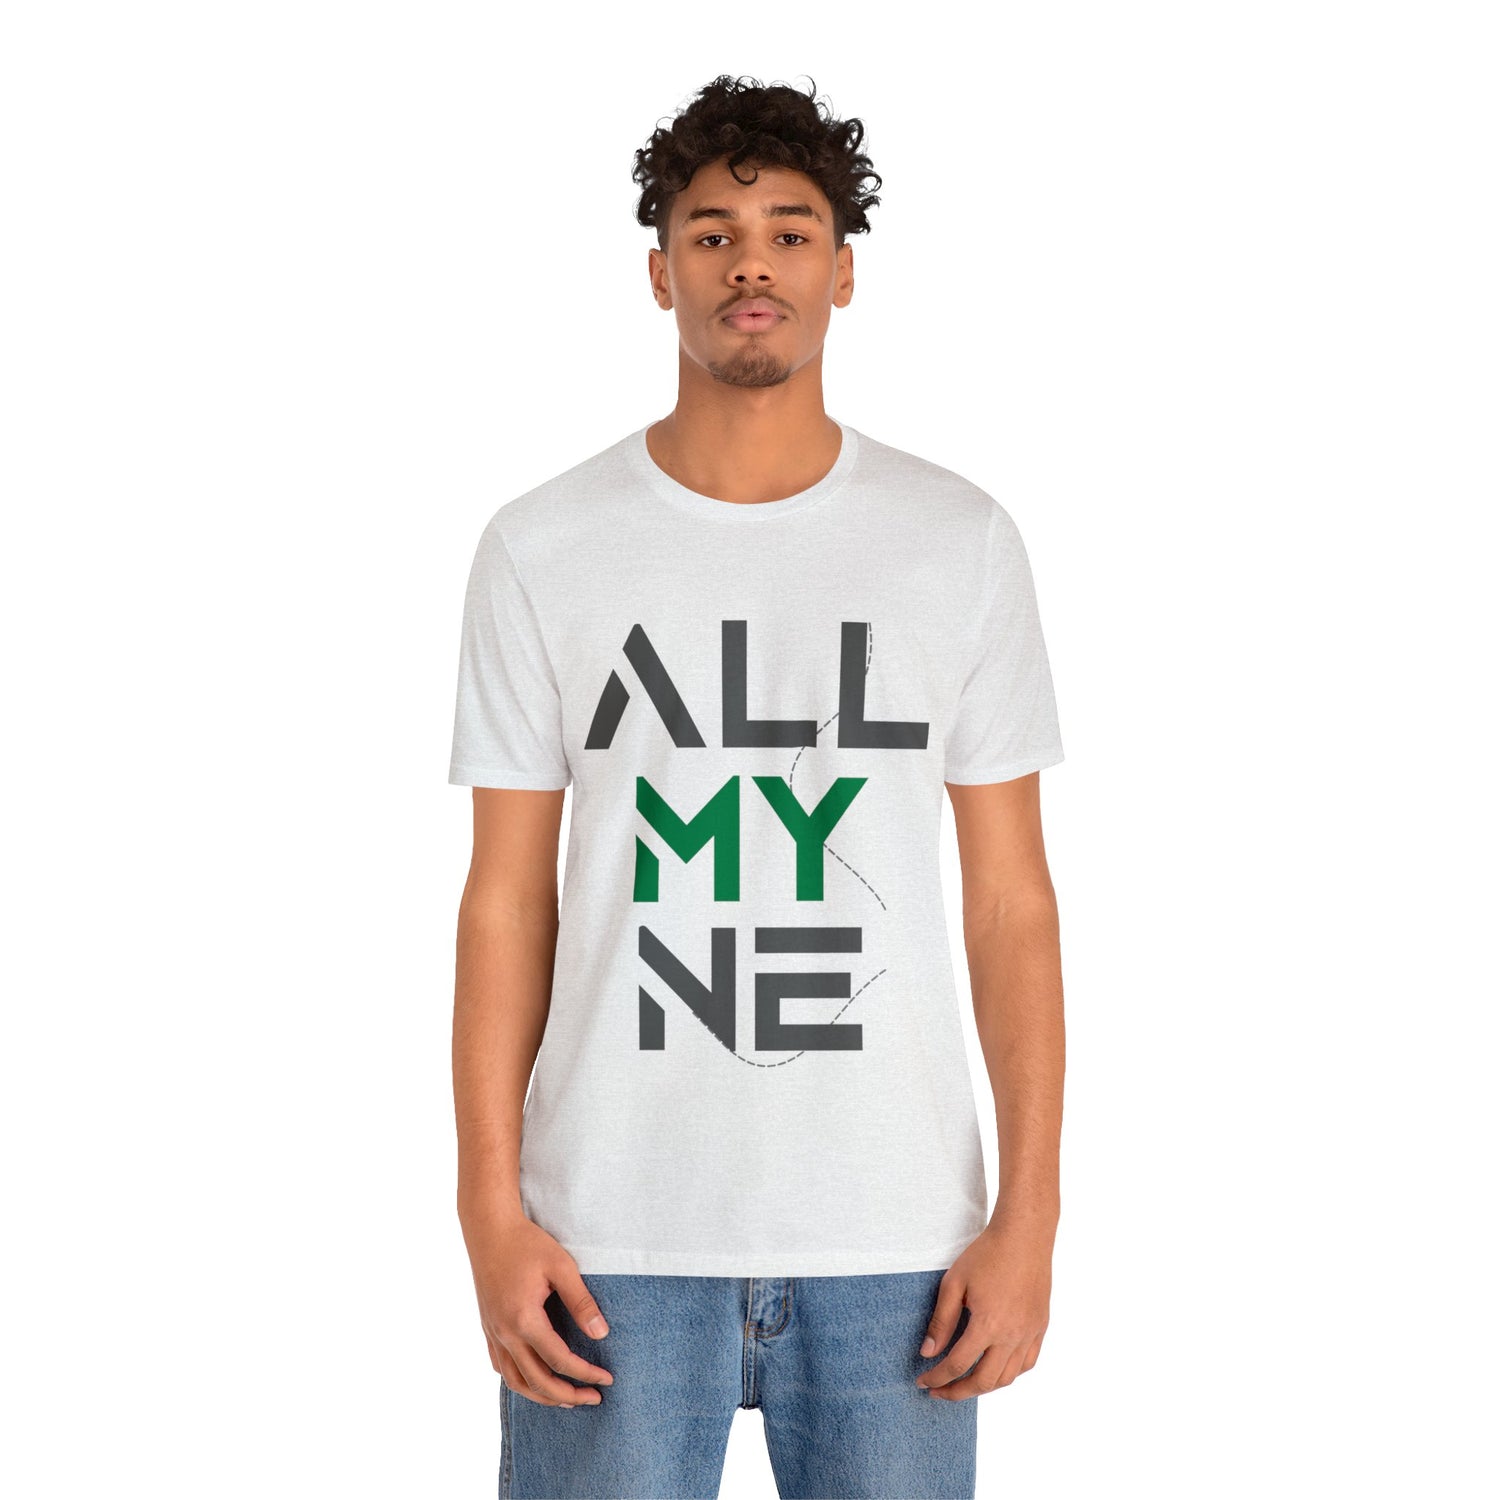 T-shirt ALLMYNE Gris/Vert